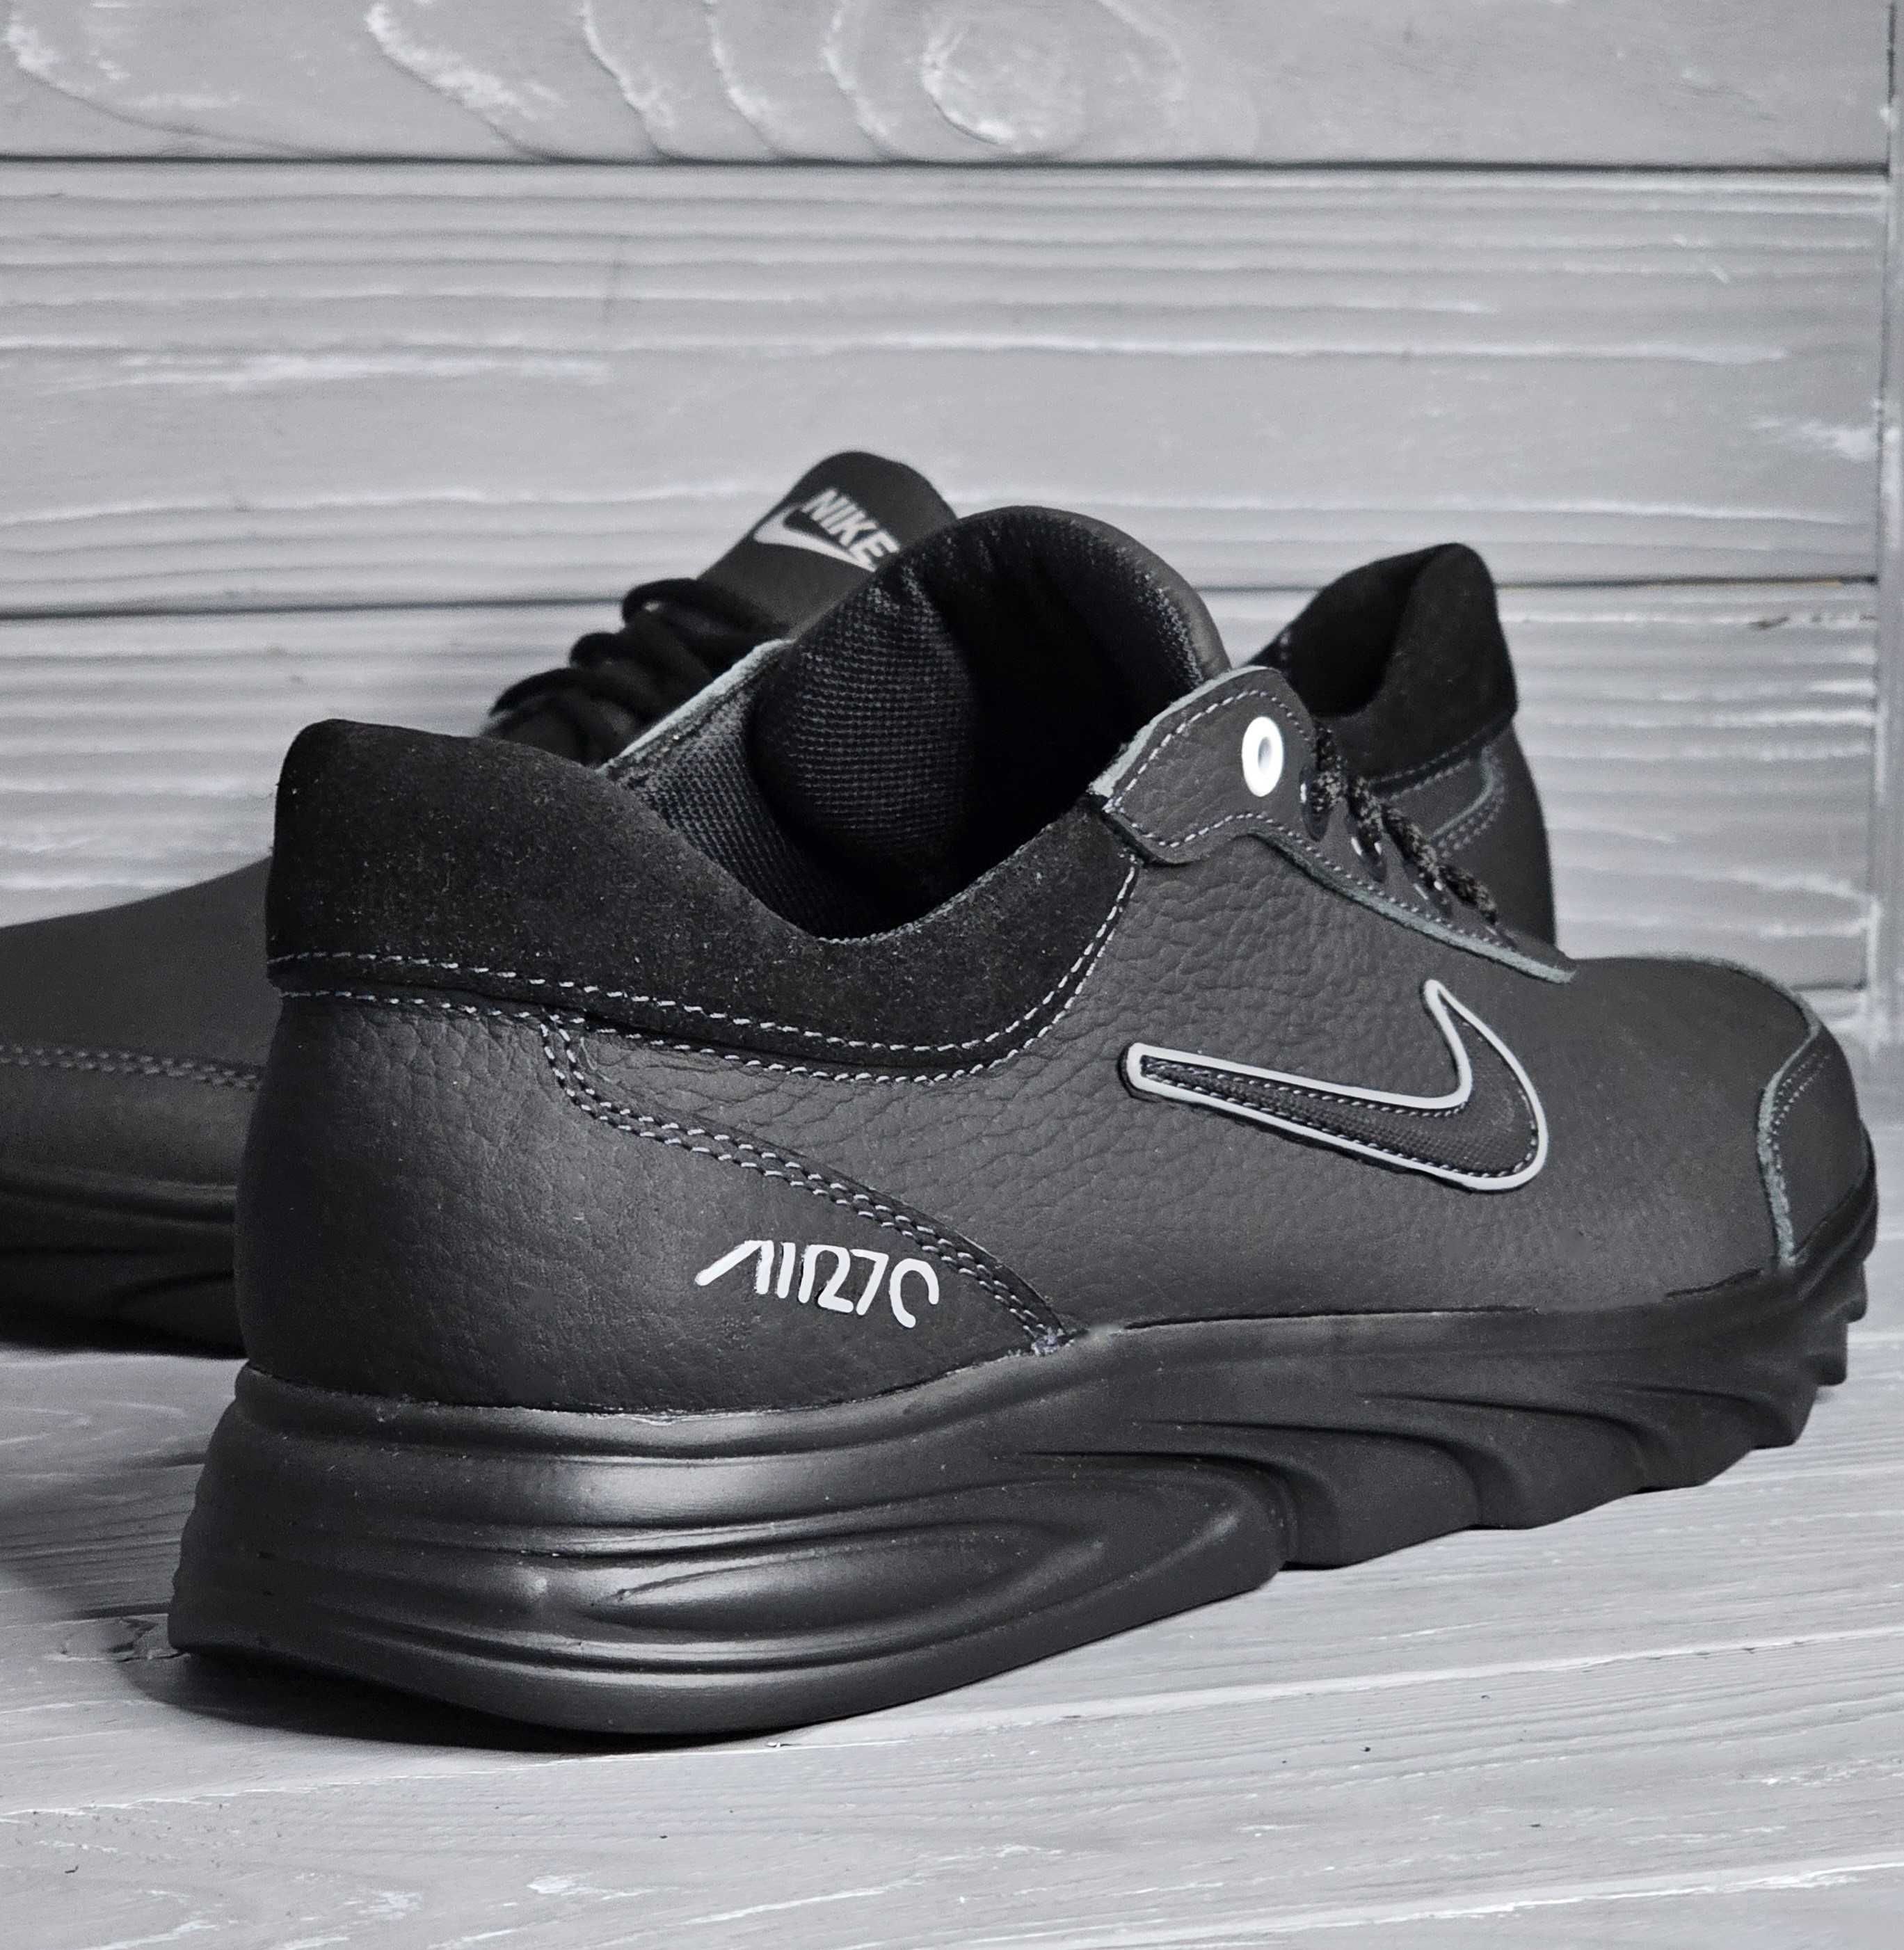 46-50рр Кожаные мужские кроссовки больших размеров в стиле Nike баталы